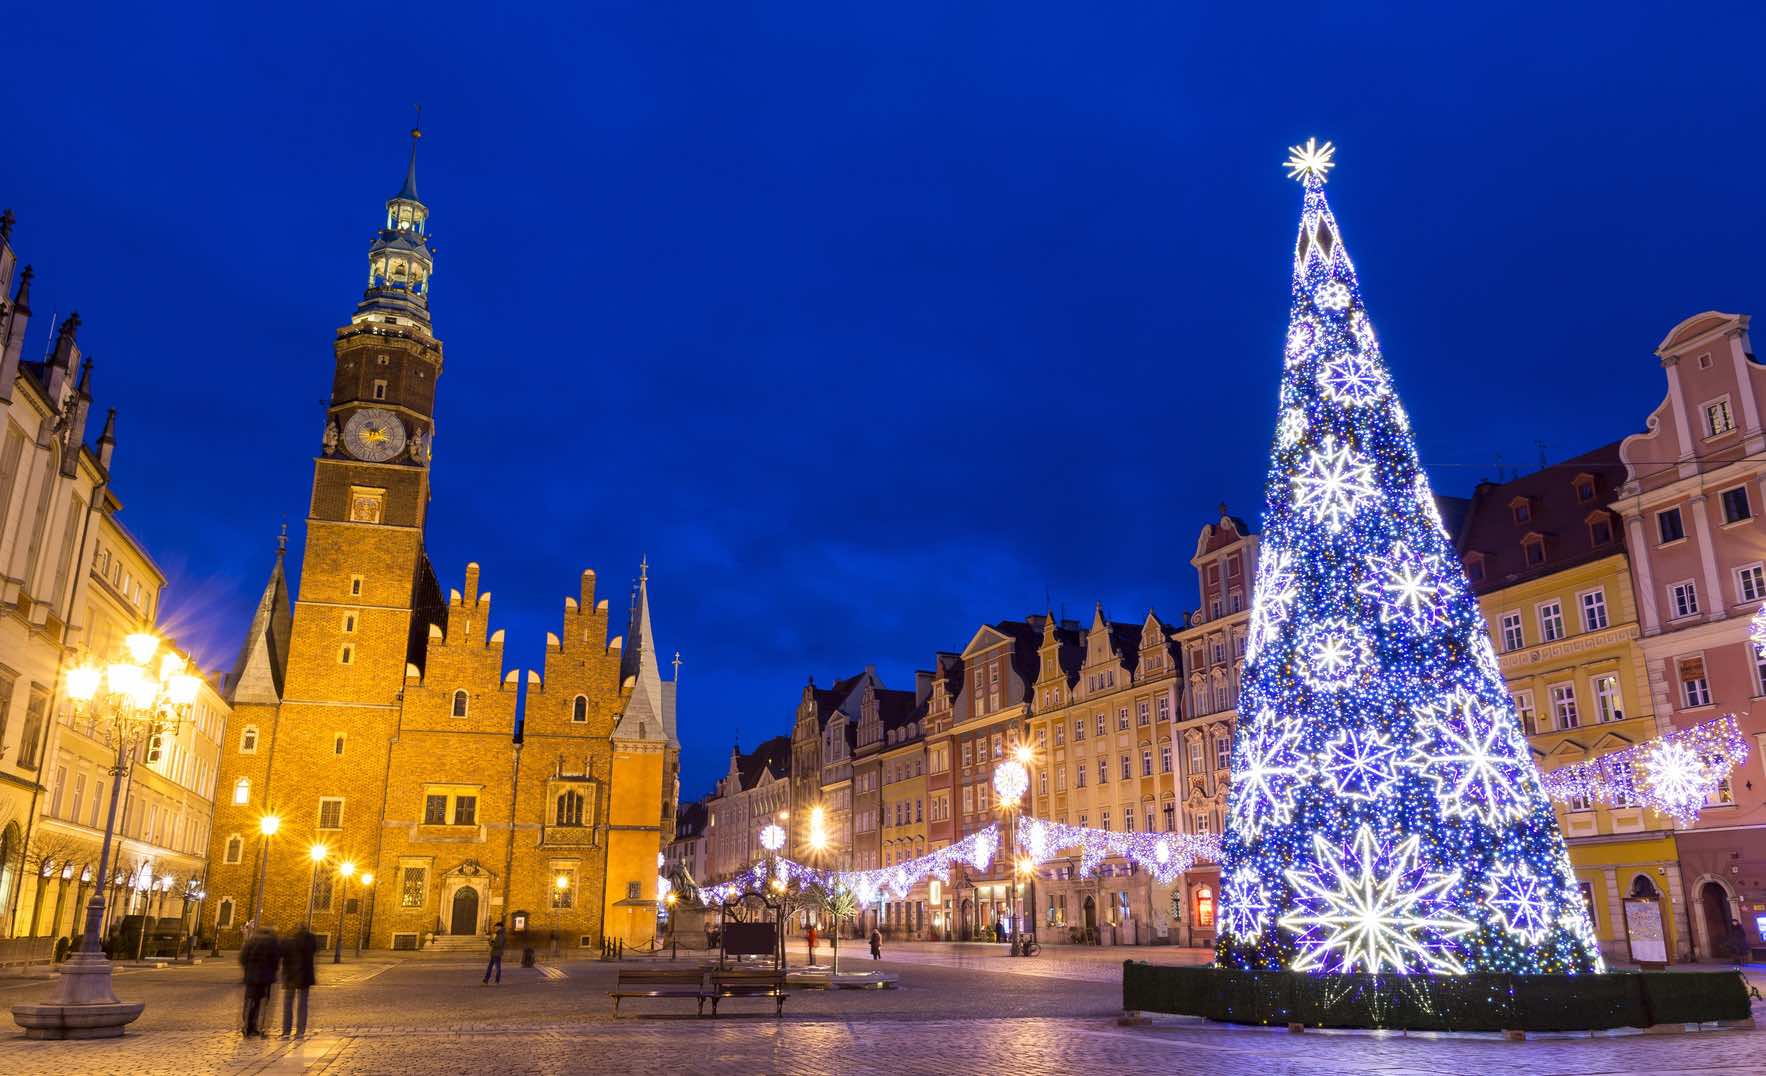 Perche Si Festeggia Il Natale.Il Natale In Polonia Come Si Festeggia Il Natale A Breslavia